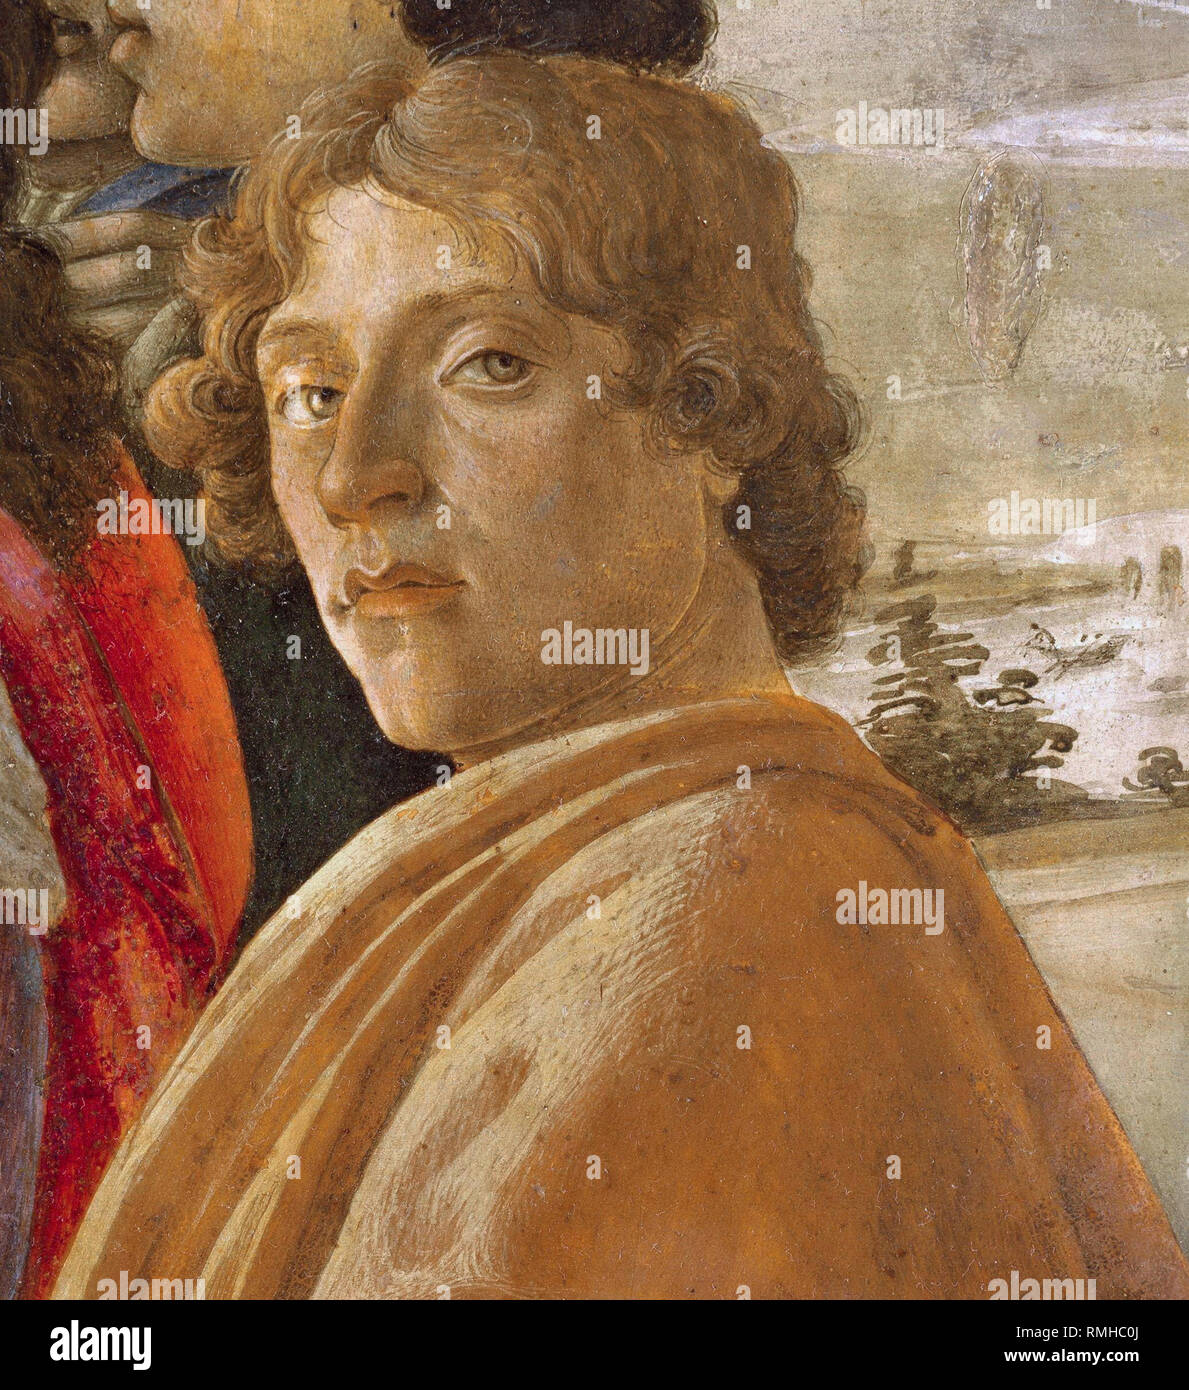 Botticelli, Alessandro di Mariano di Vanni Filipepi (1445 – 1510), Sandro Botticelli, Italian painter artist Stock Photo